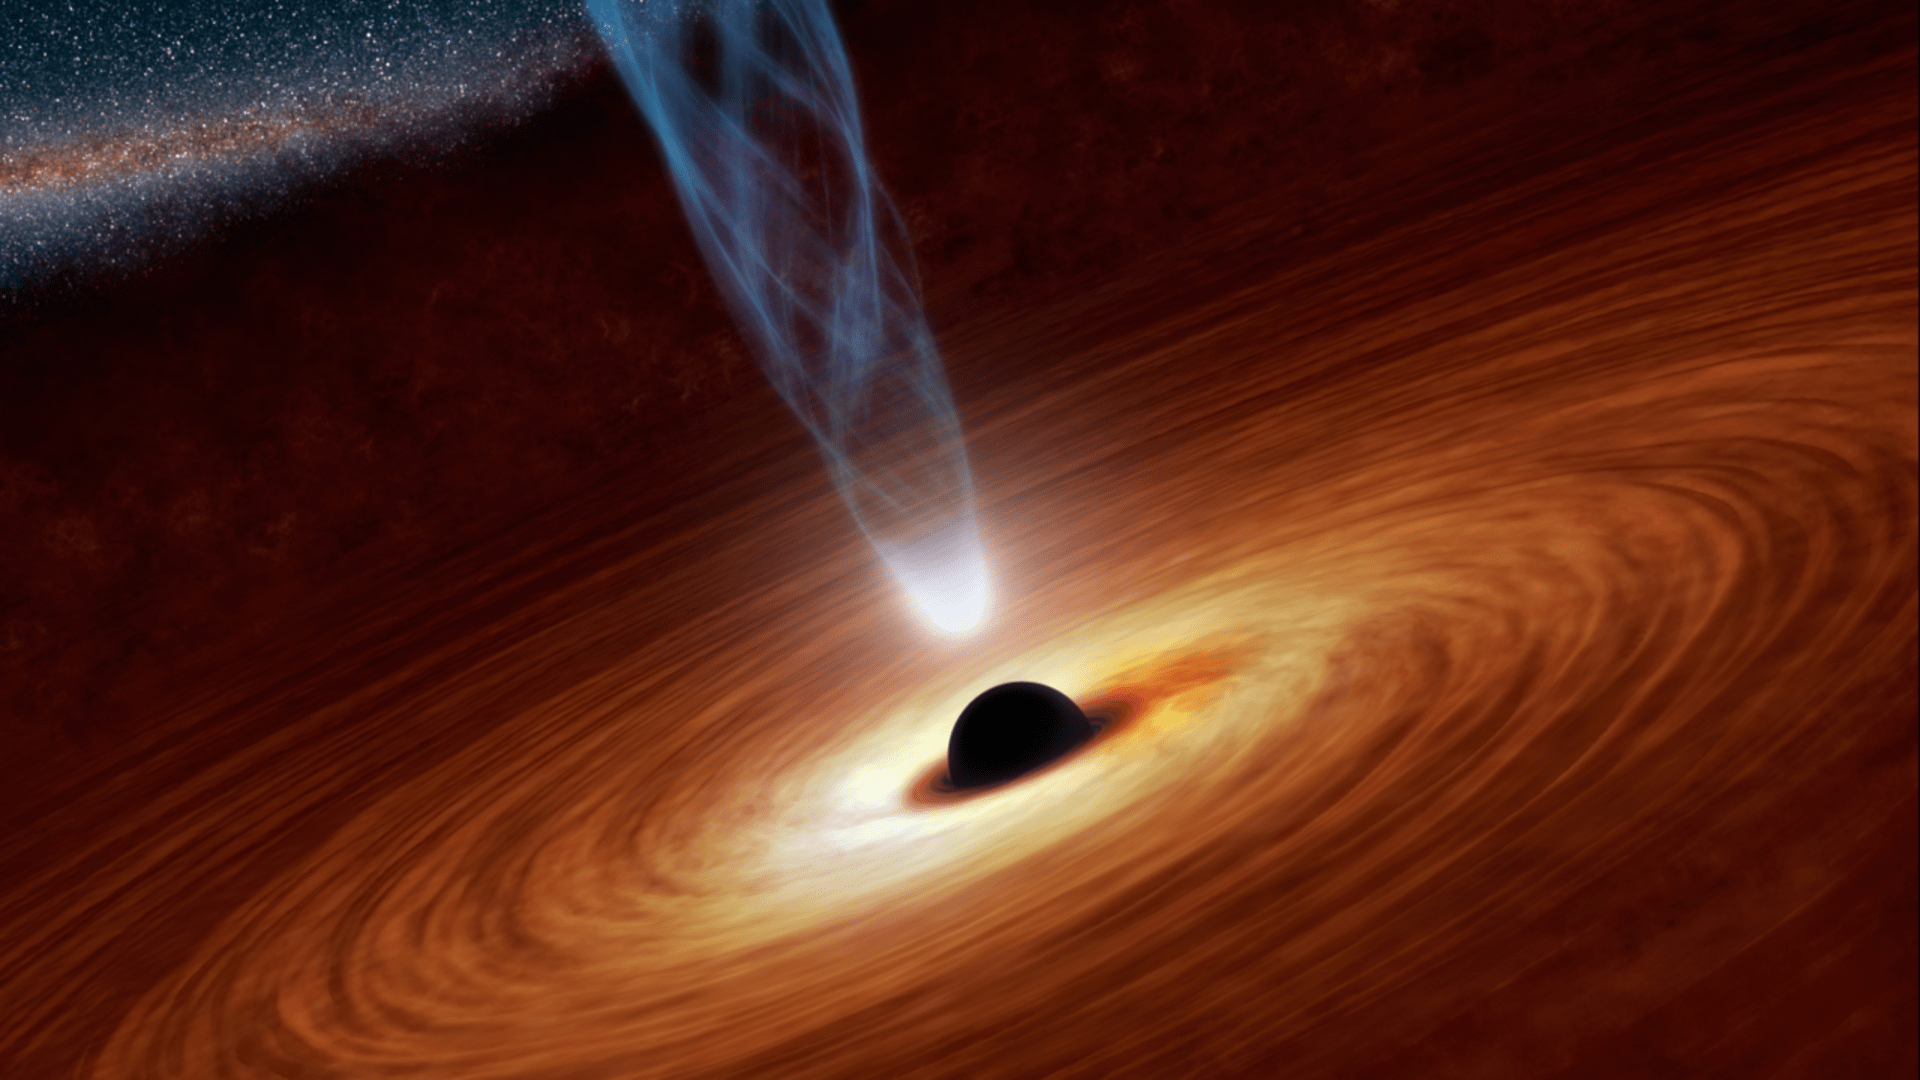 Supermasivní černá díra